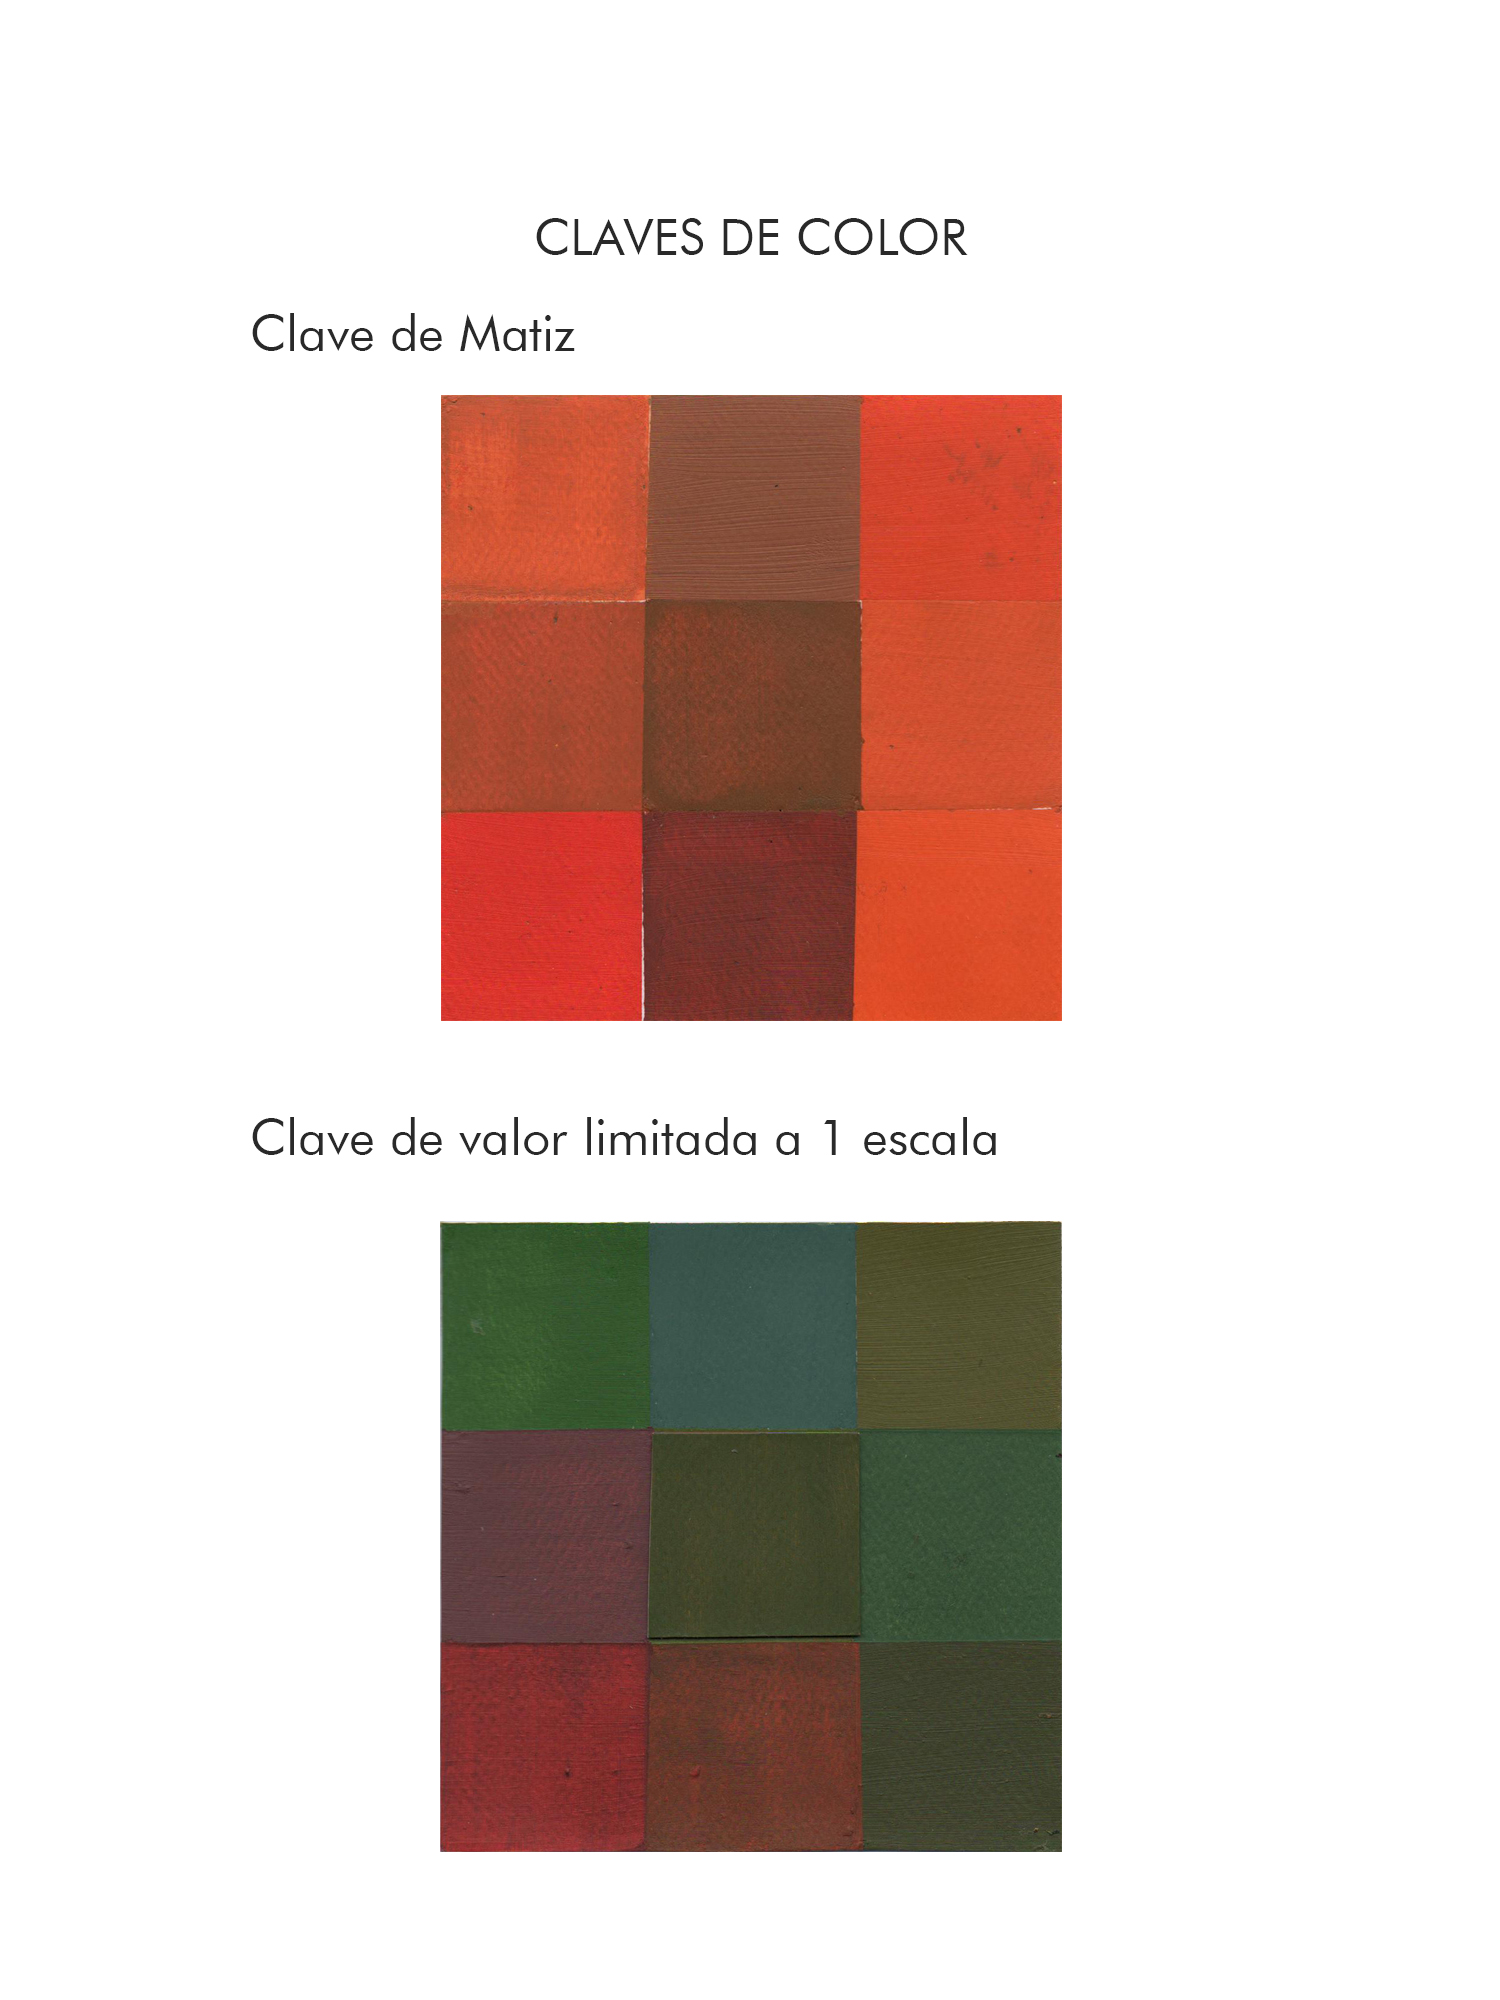 Andrea Santillán, Claves de color